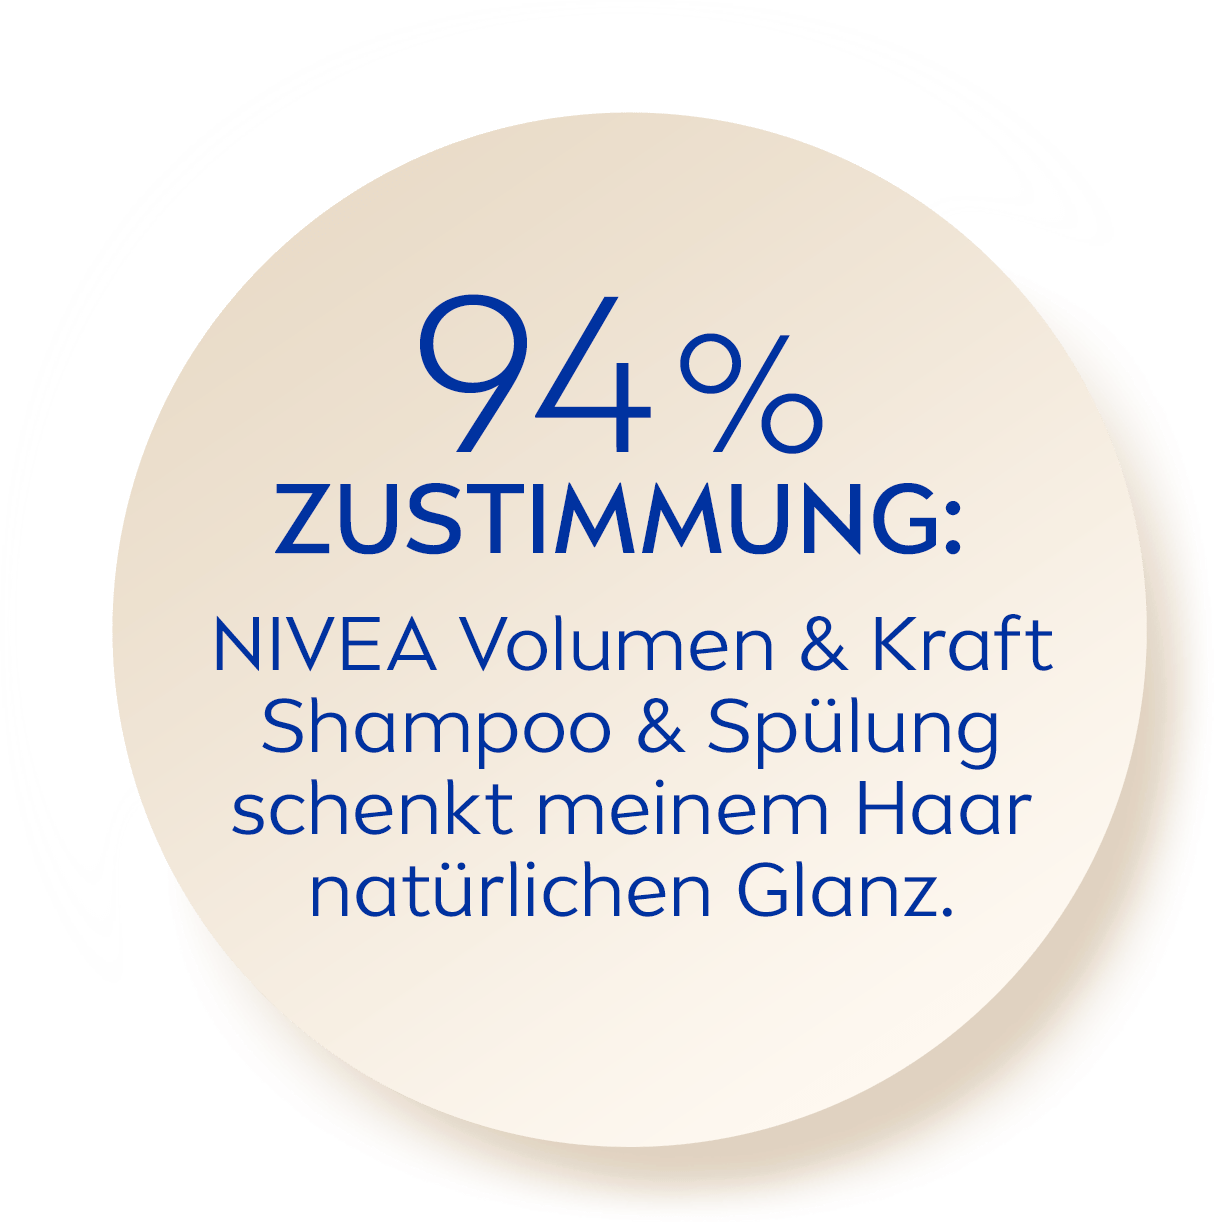 94 % Zustimmung NIVEA Volumen & Kraft Shampoo & Spülung schenkt meinem Haar natürlichen Glanz.